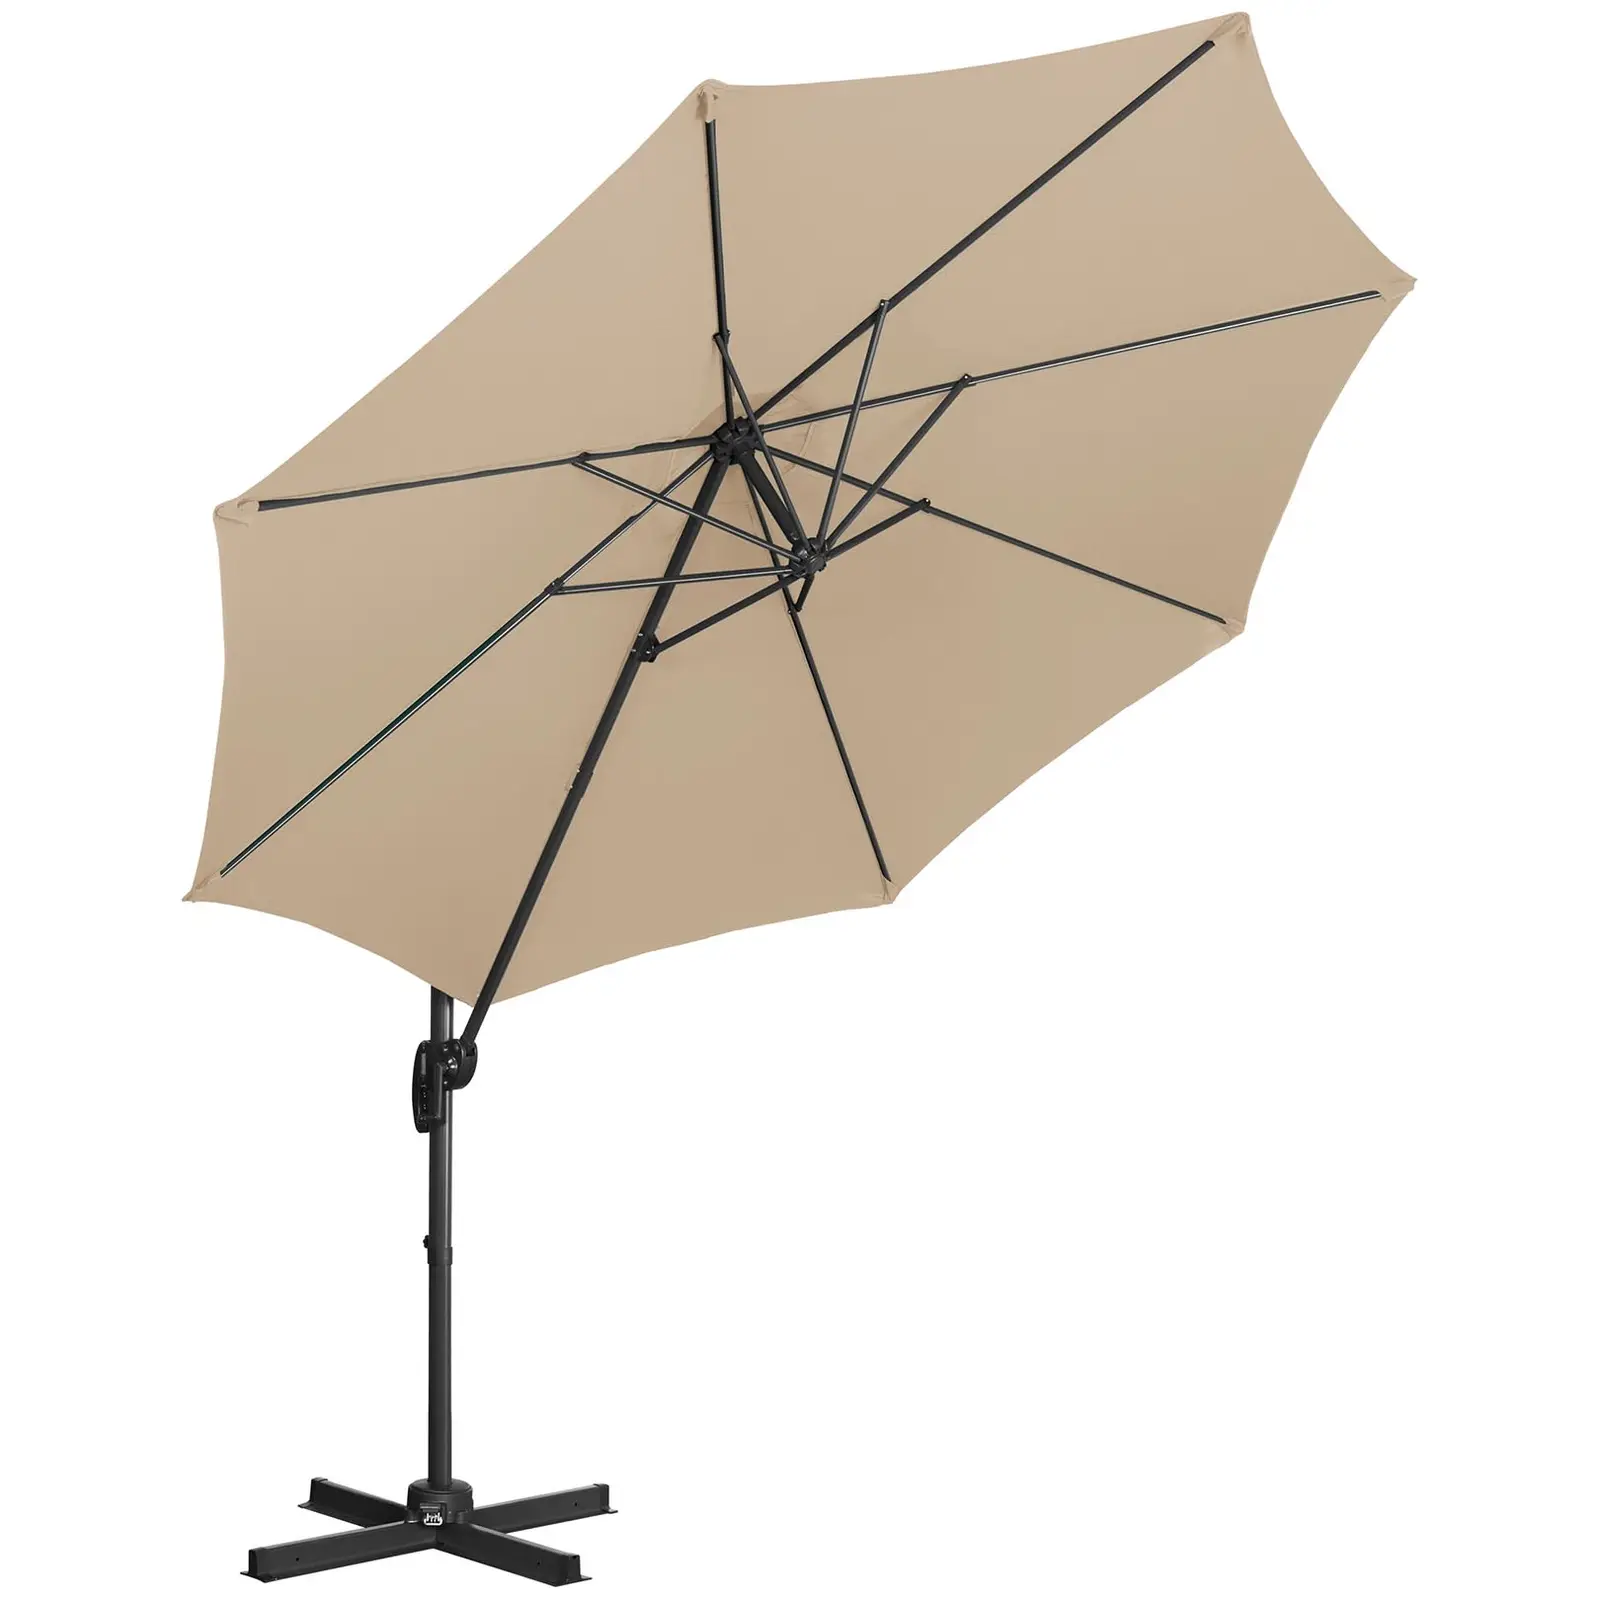 Aurinkovarjo - ruskeanharmaa - pyöreä - Ø 300 cm - kallistettava ja käännettävä